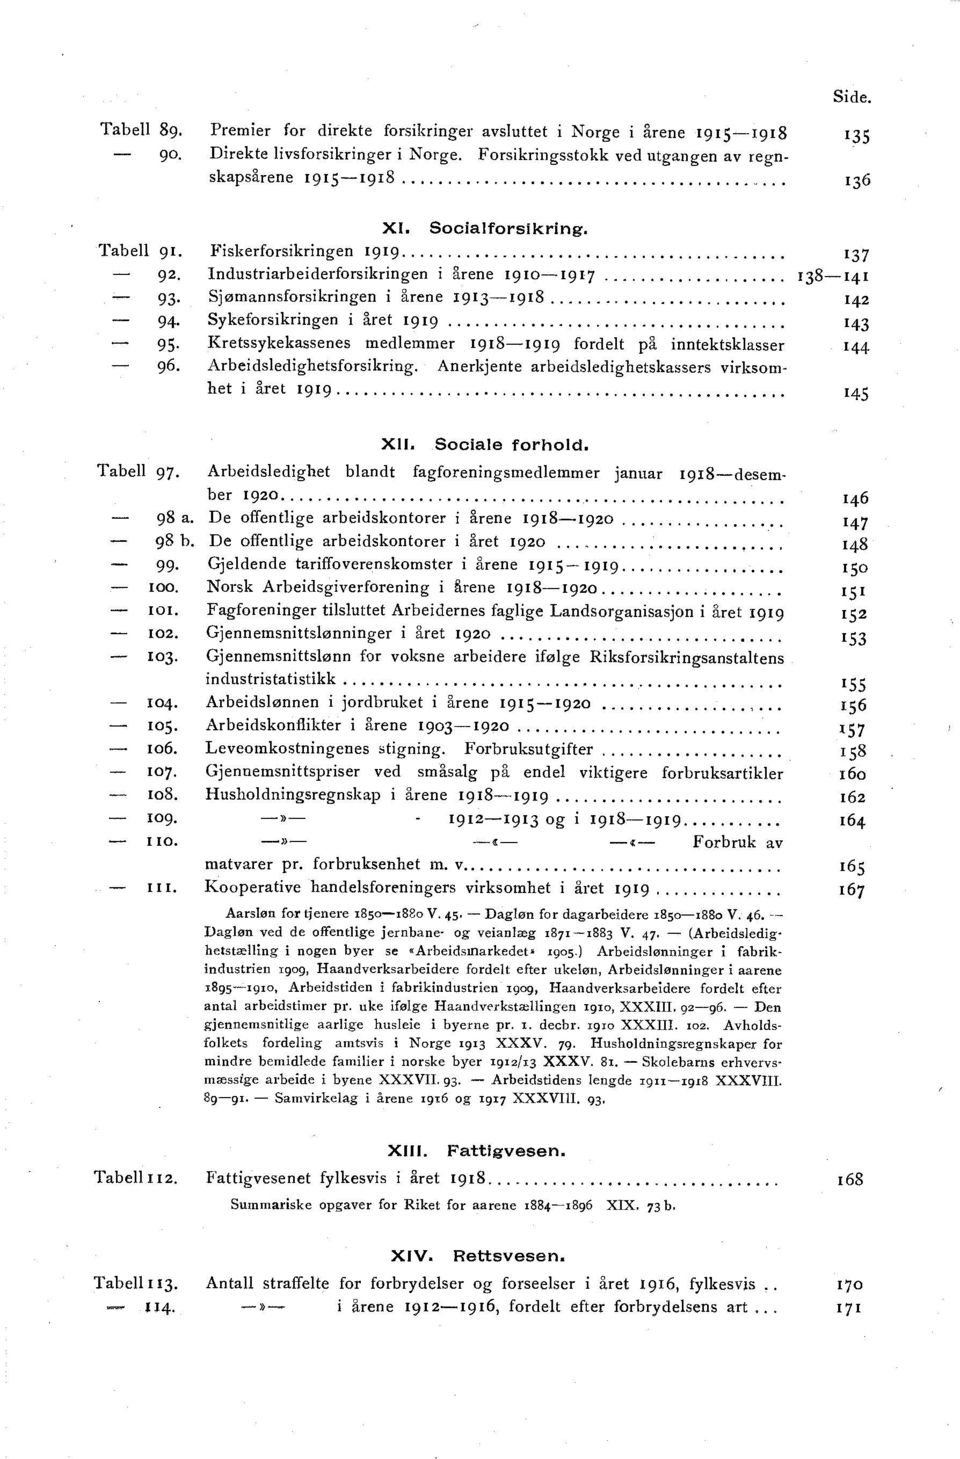 Sjømannsforsikringen i årene 1913-1918 14 2 94. Sykeforsikringen i året 1919 1 43 95. Kretssykekassenes medlemmer 1918-1919 fordelt på inntektsklasser 96. Arbeidsledighetsforsikring.